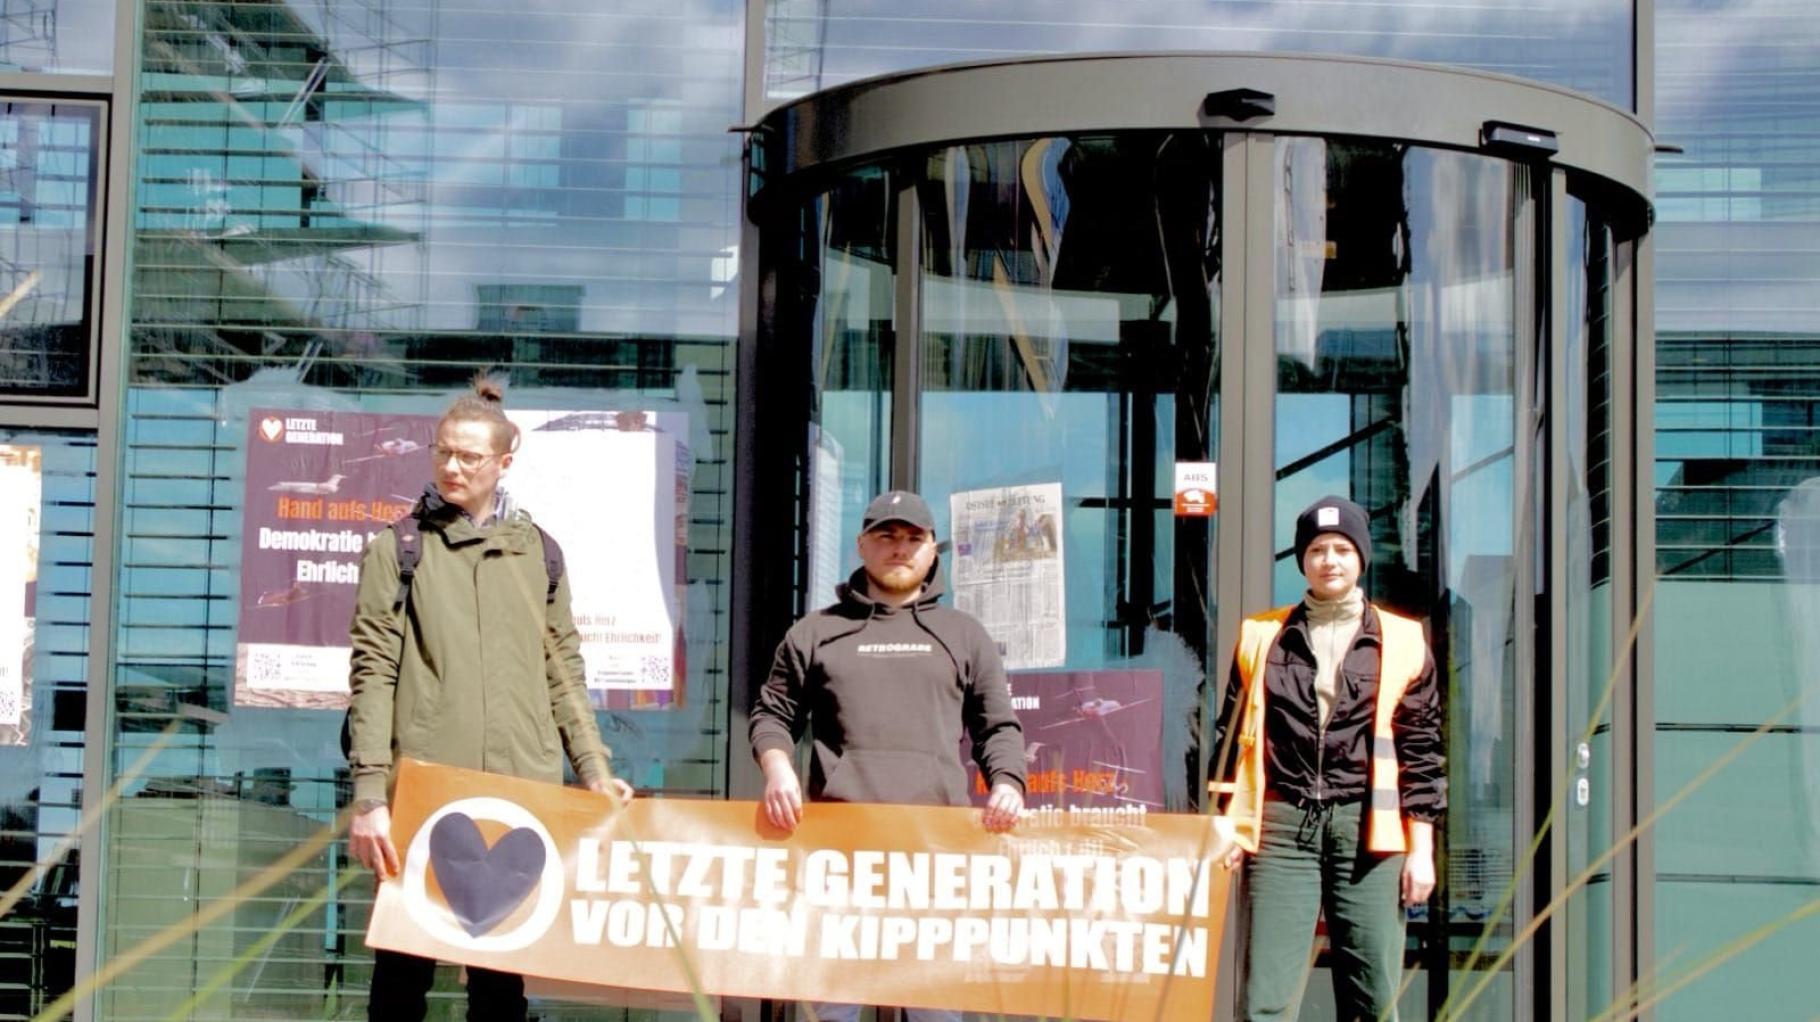 Klebe-Protest von "Letzter Generation" bei Aida: Vier Verdächtige im Fokus